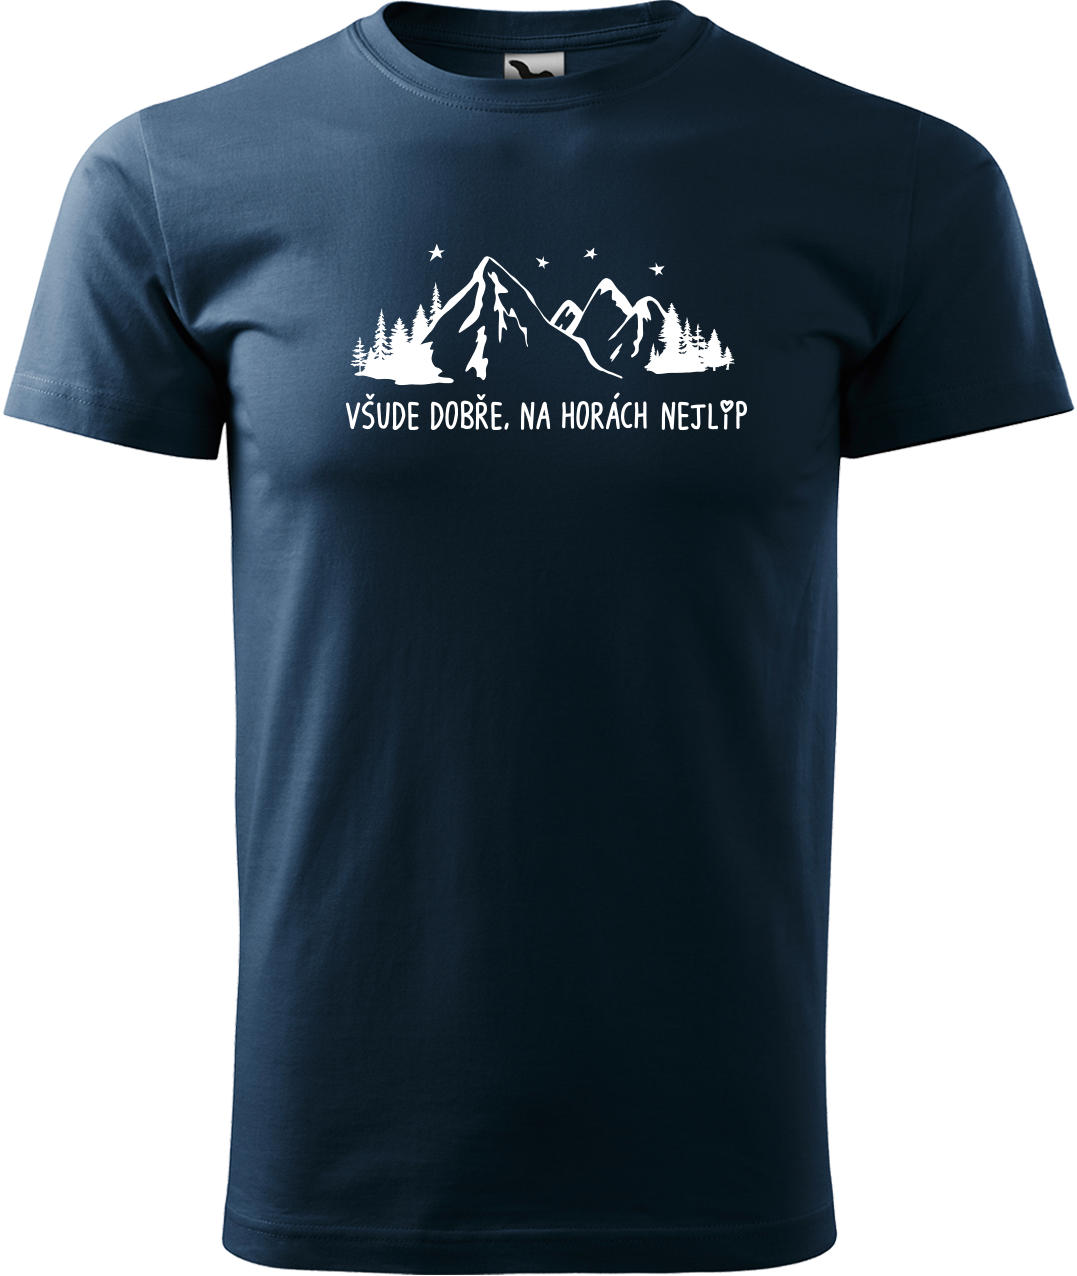 Pánské tričko na hory - Všude dobře, na horách nejlíp Velikost: M, Barva: Námořní modrá (02)